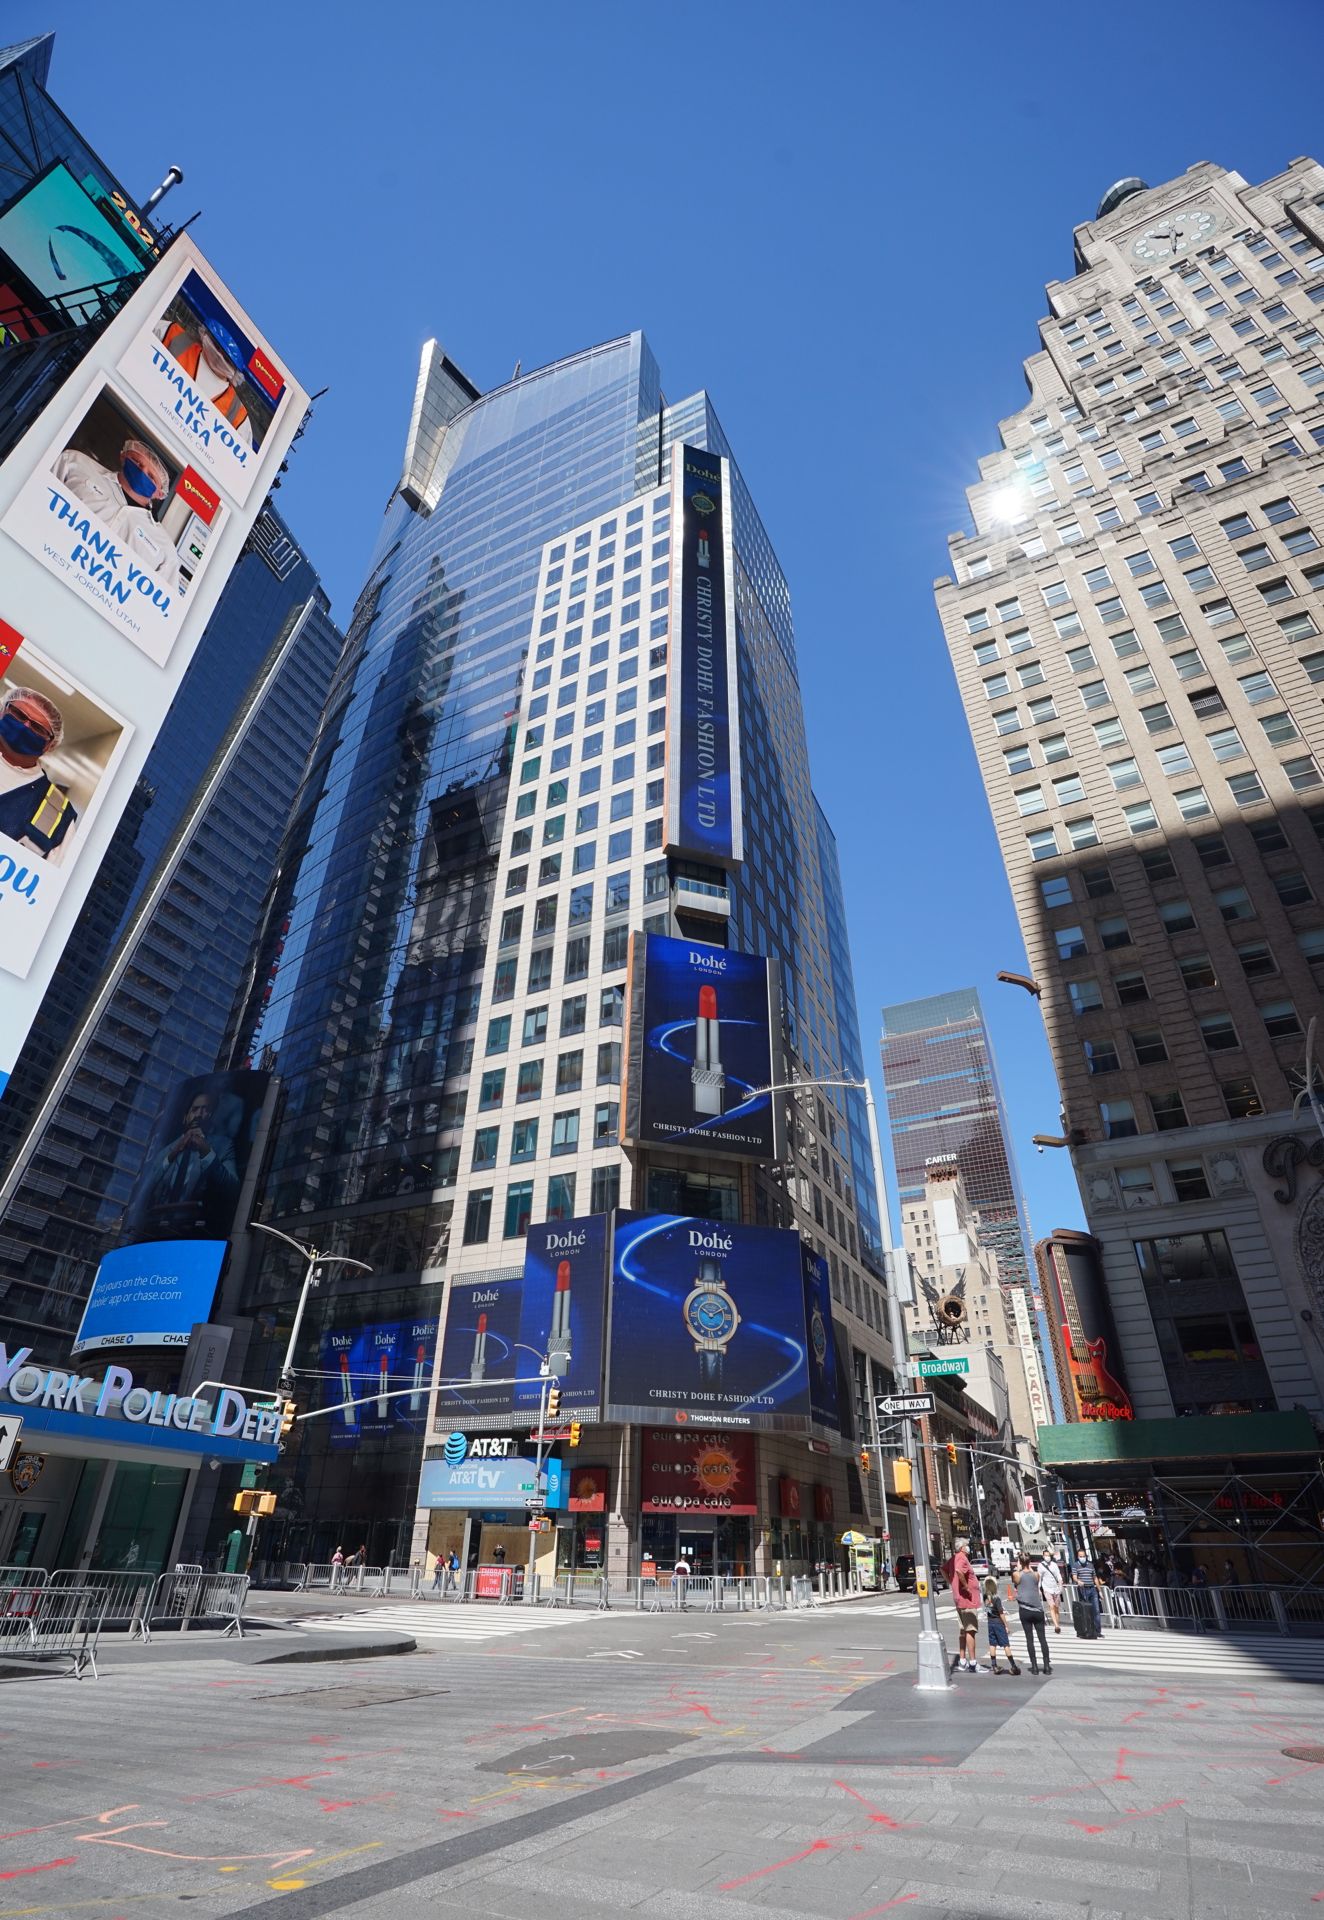 一二映像盘点2021年上半年荣登纽约时代广场路透屏纳斯达克大屏的知名